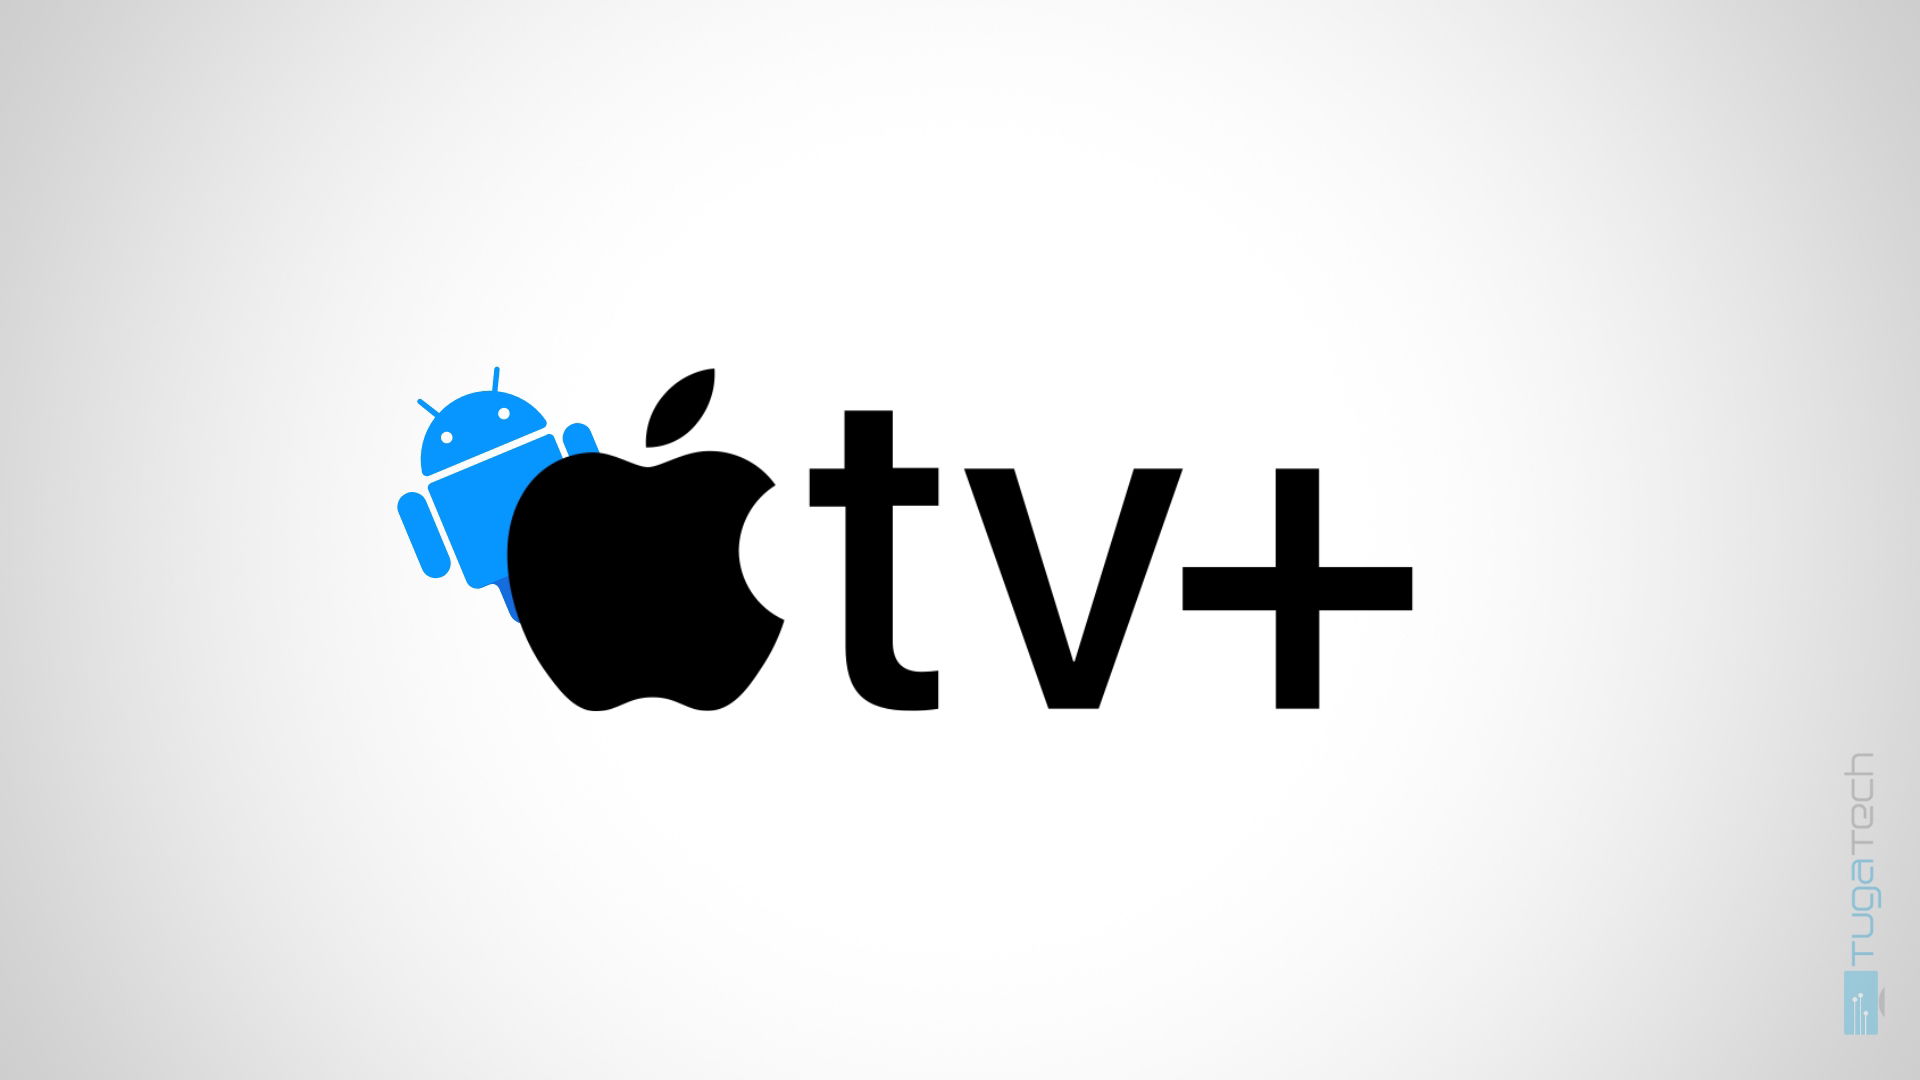 Apple TV Plus com logo do android